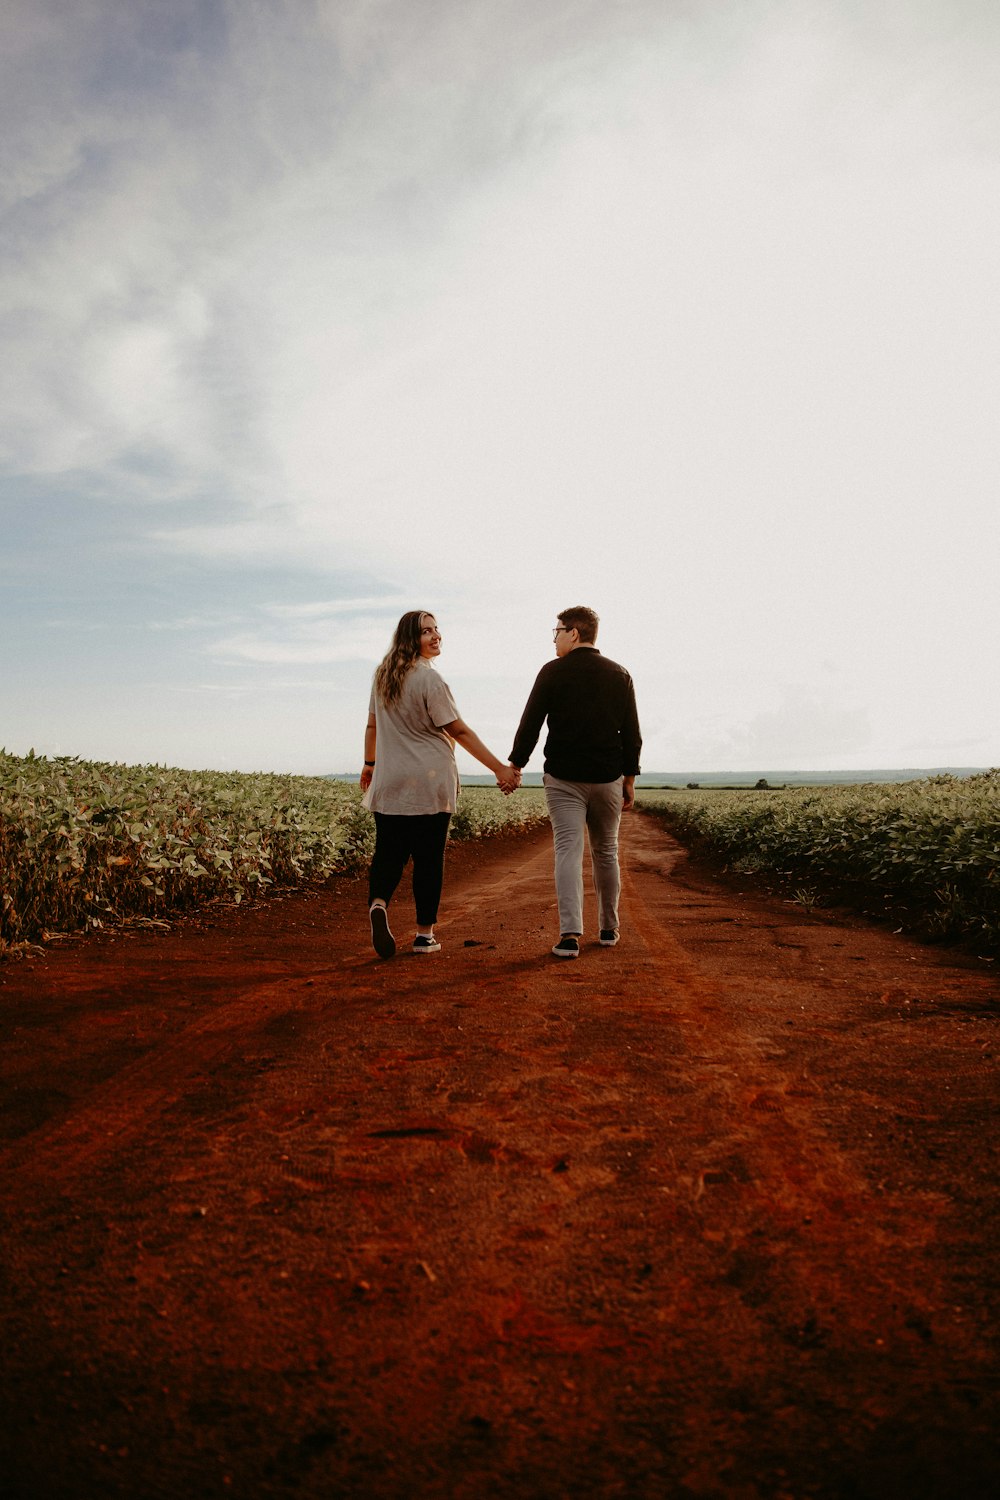 Un hombre y una mujer tomados de la mano caminando por un camino de tierra